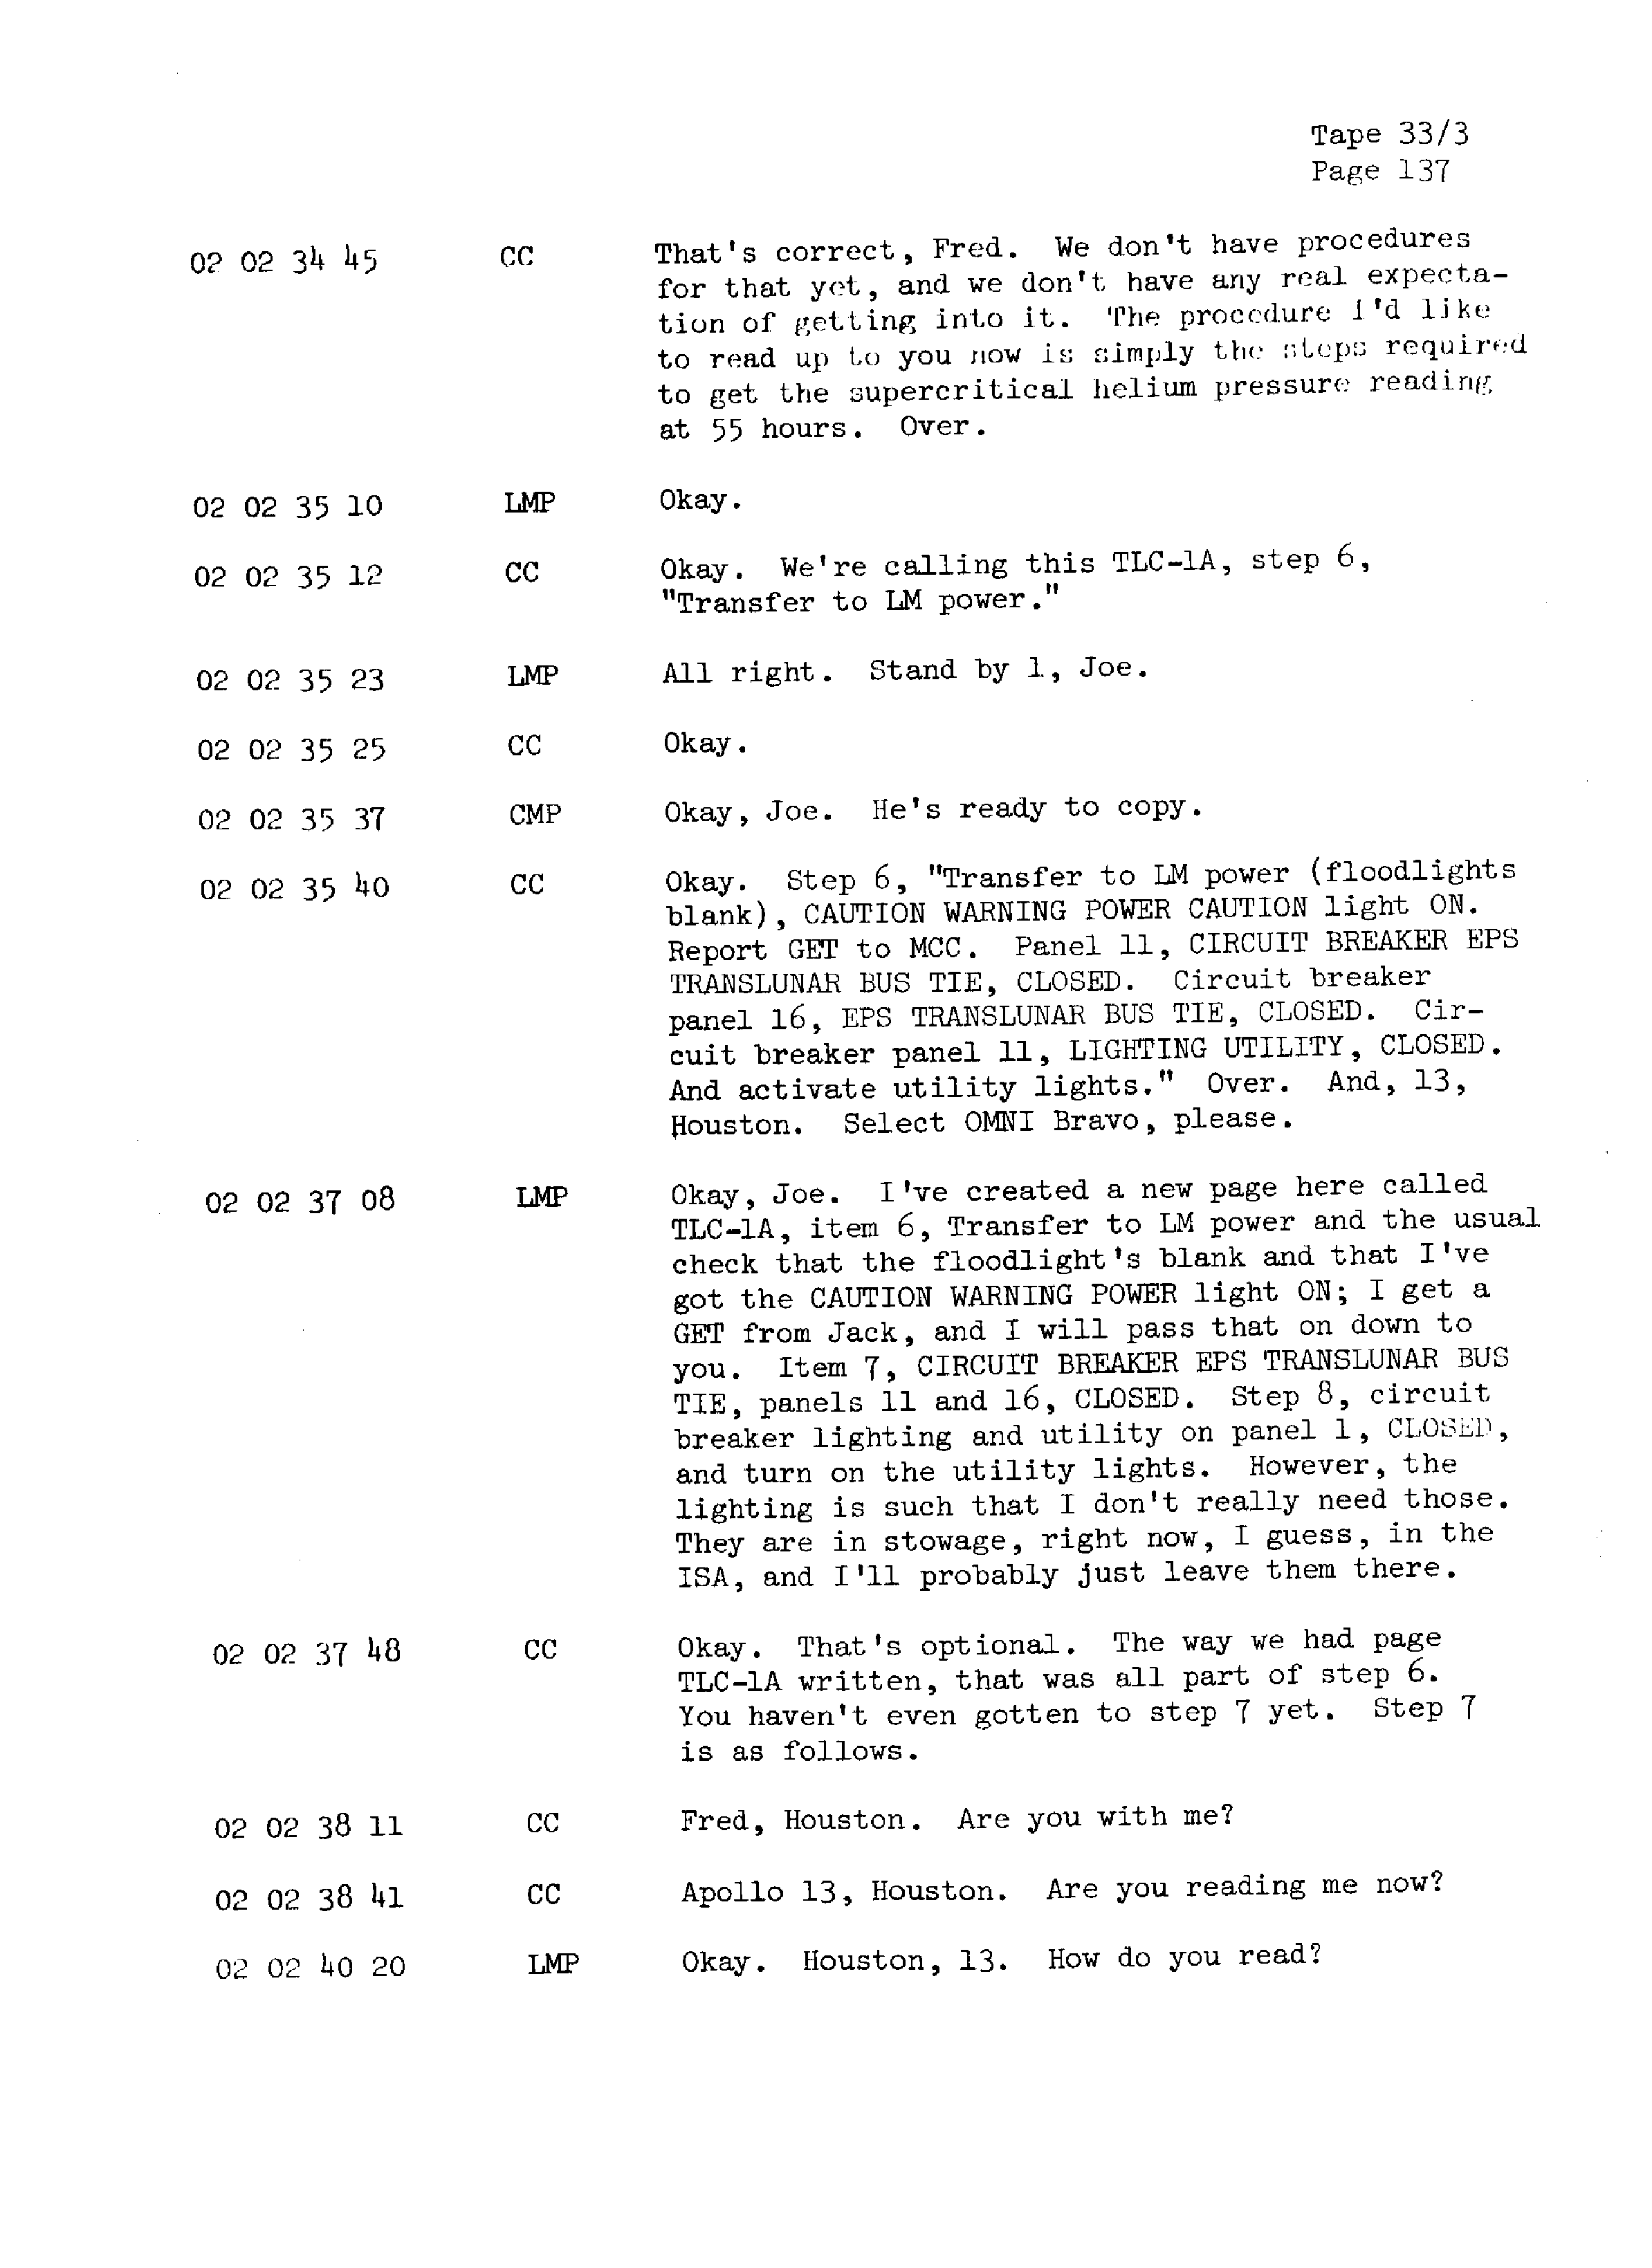 Page 144 of Apollo 13’s original transcript